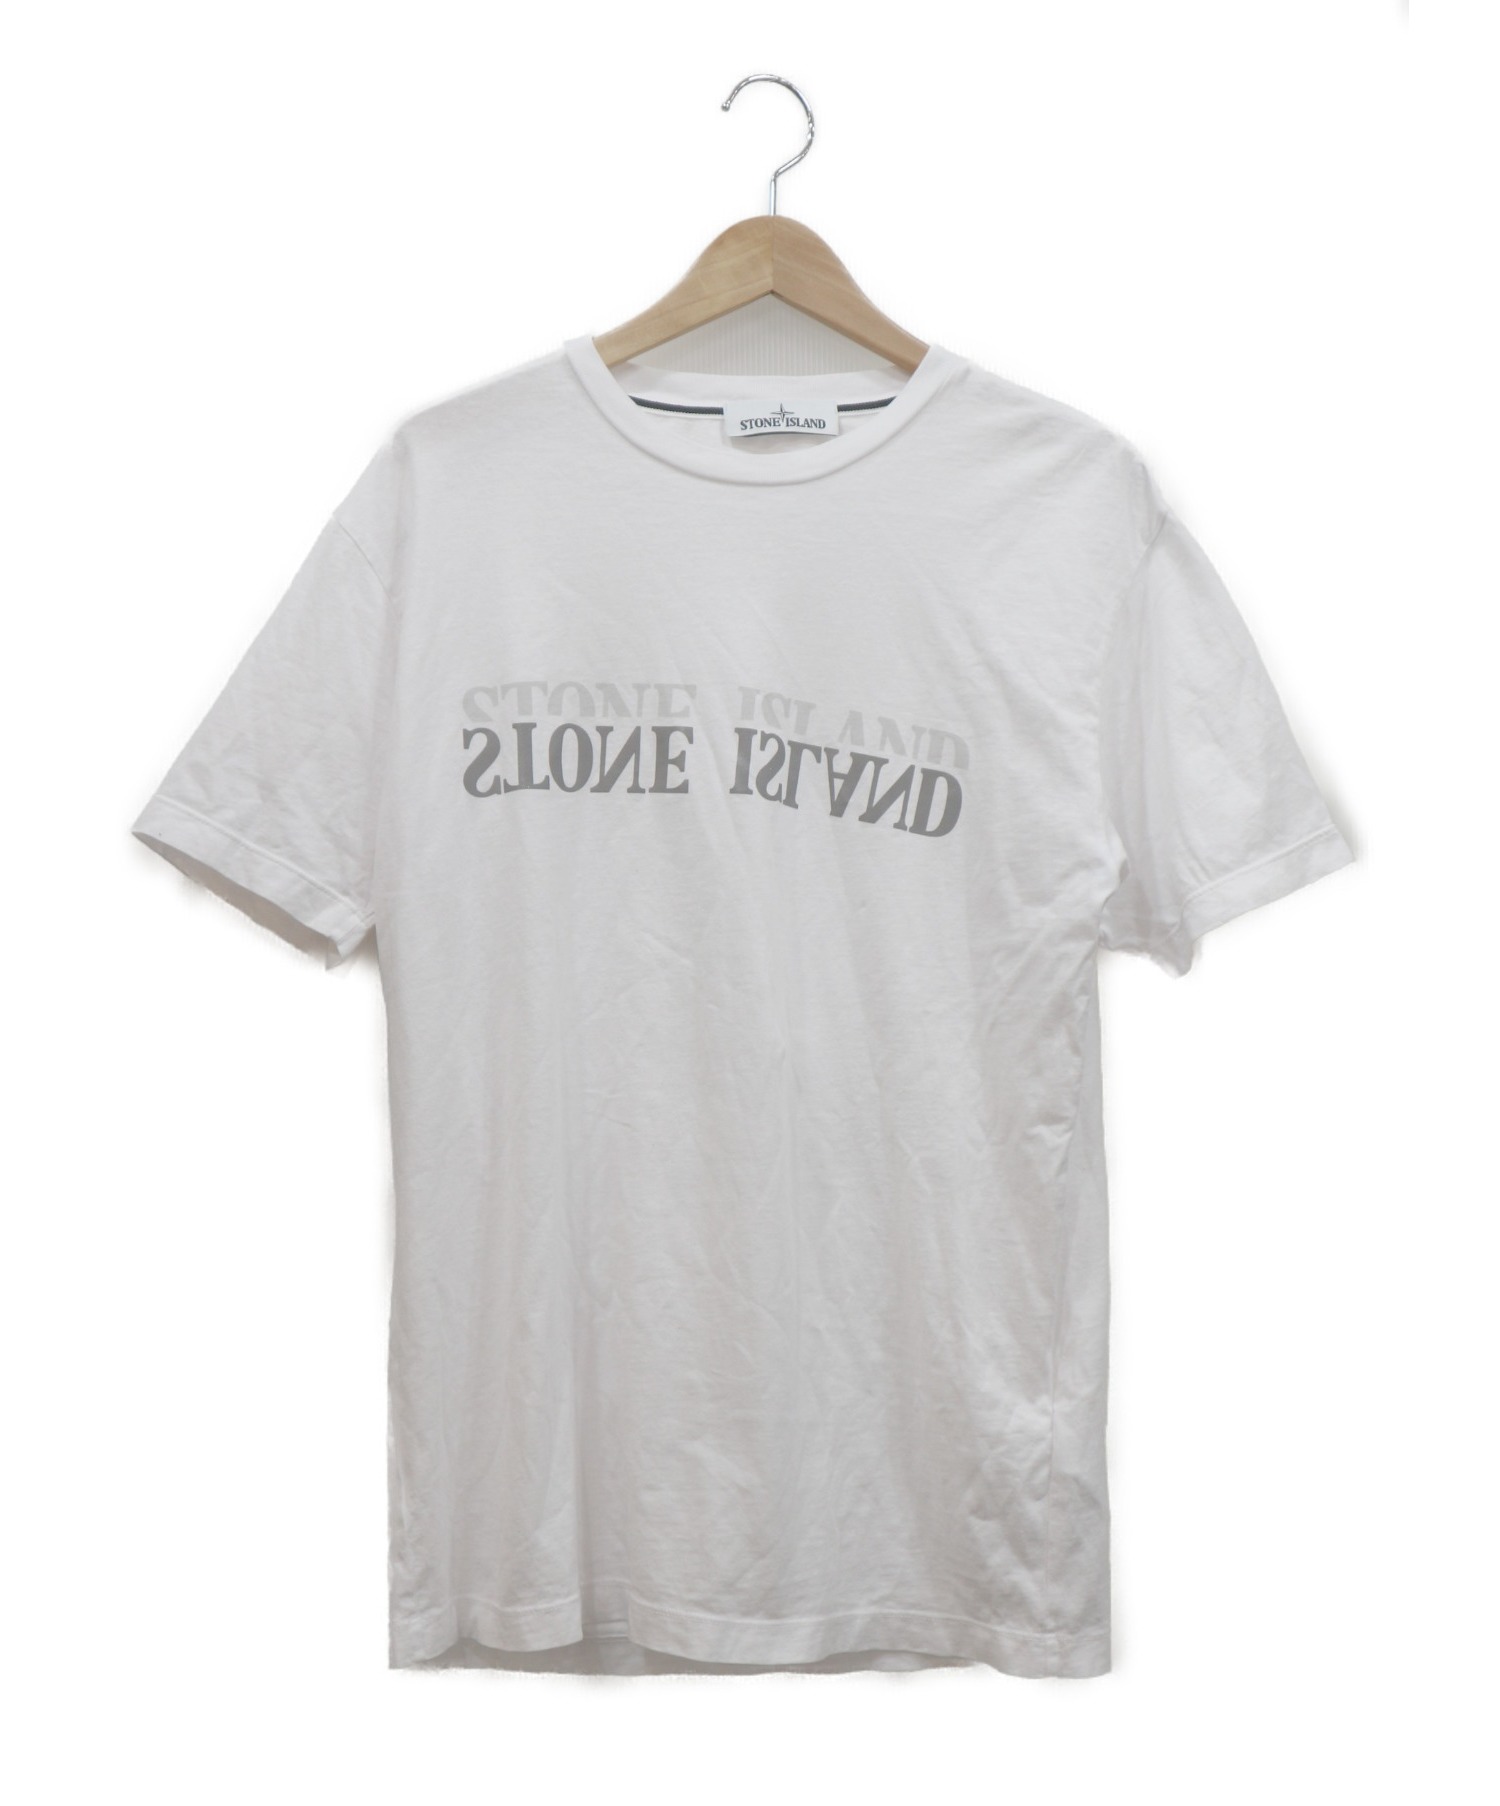 STONE ISLAND (ストーンアイランド) Tシャツ ホワイト サイズ:M チュニジア製 70152NS88